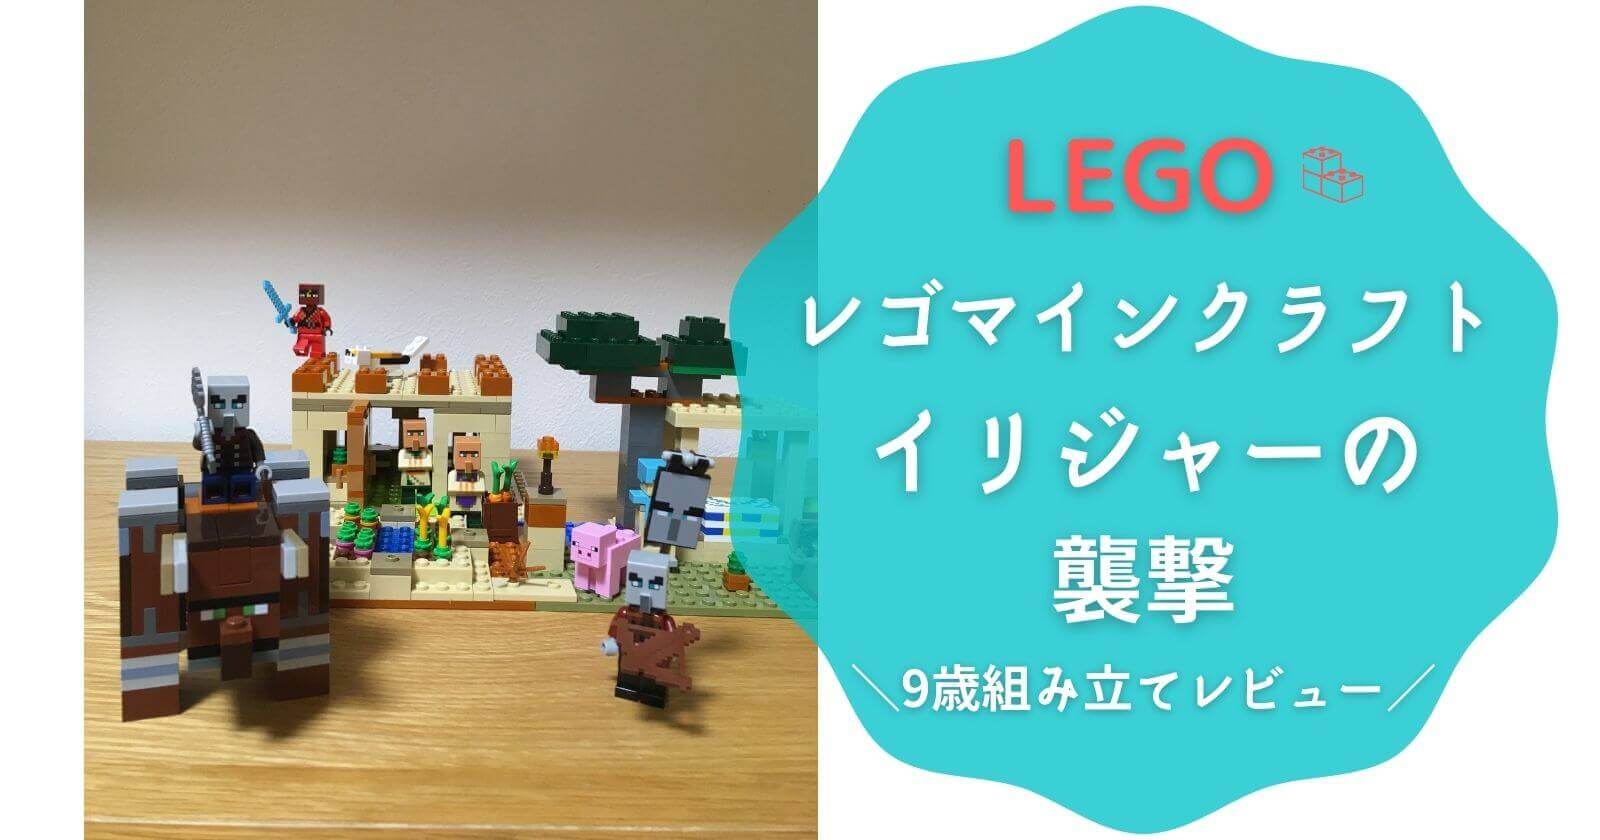 レゴマインクラフト イリジャーの襲撃 9歳組み立てレビュー Lego ブログ紹介 Yunko Blog